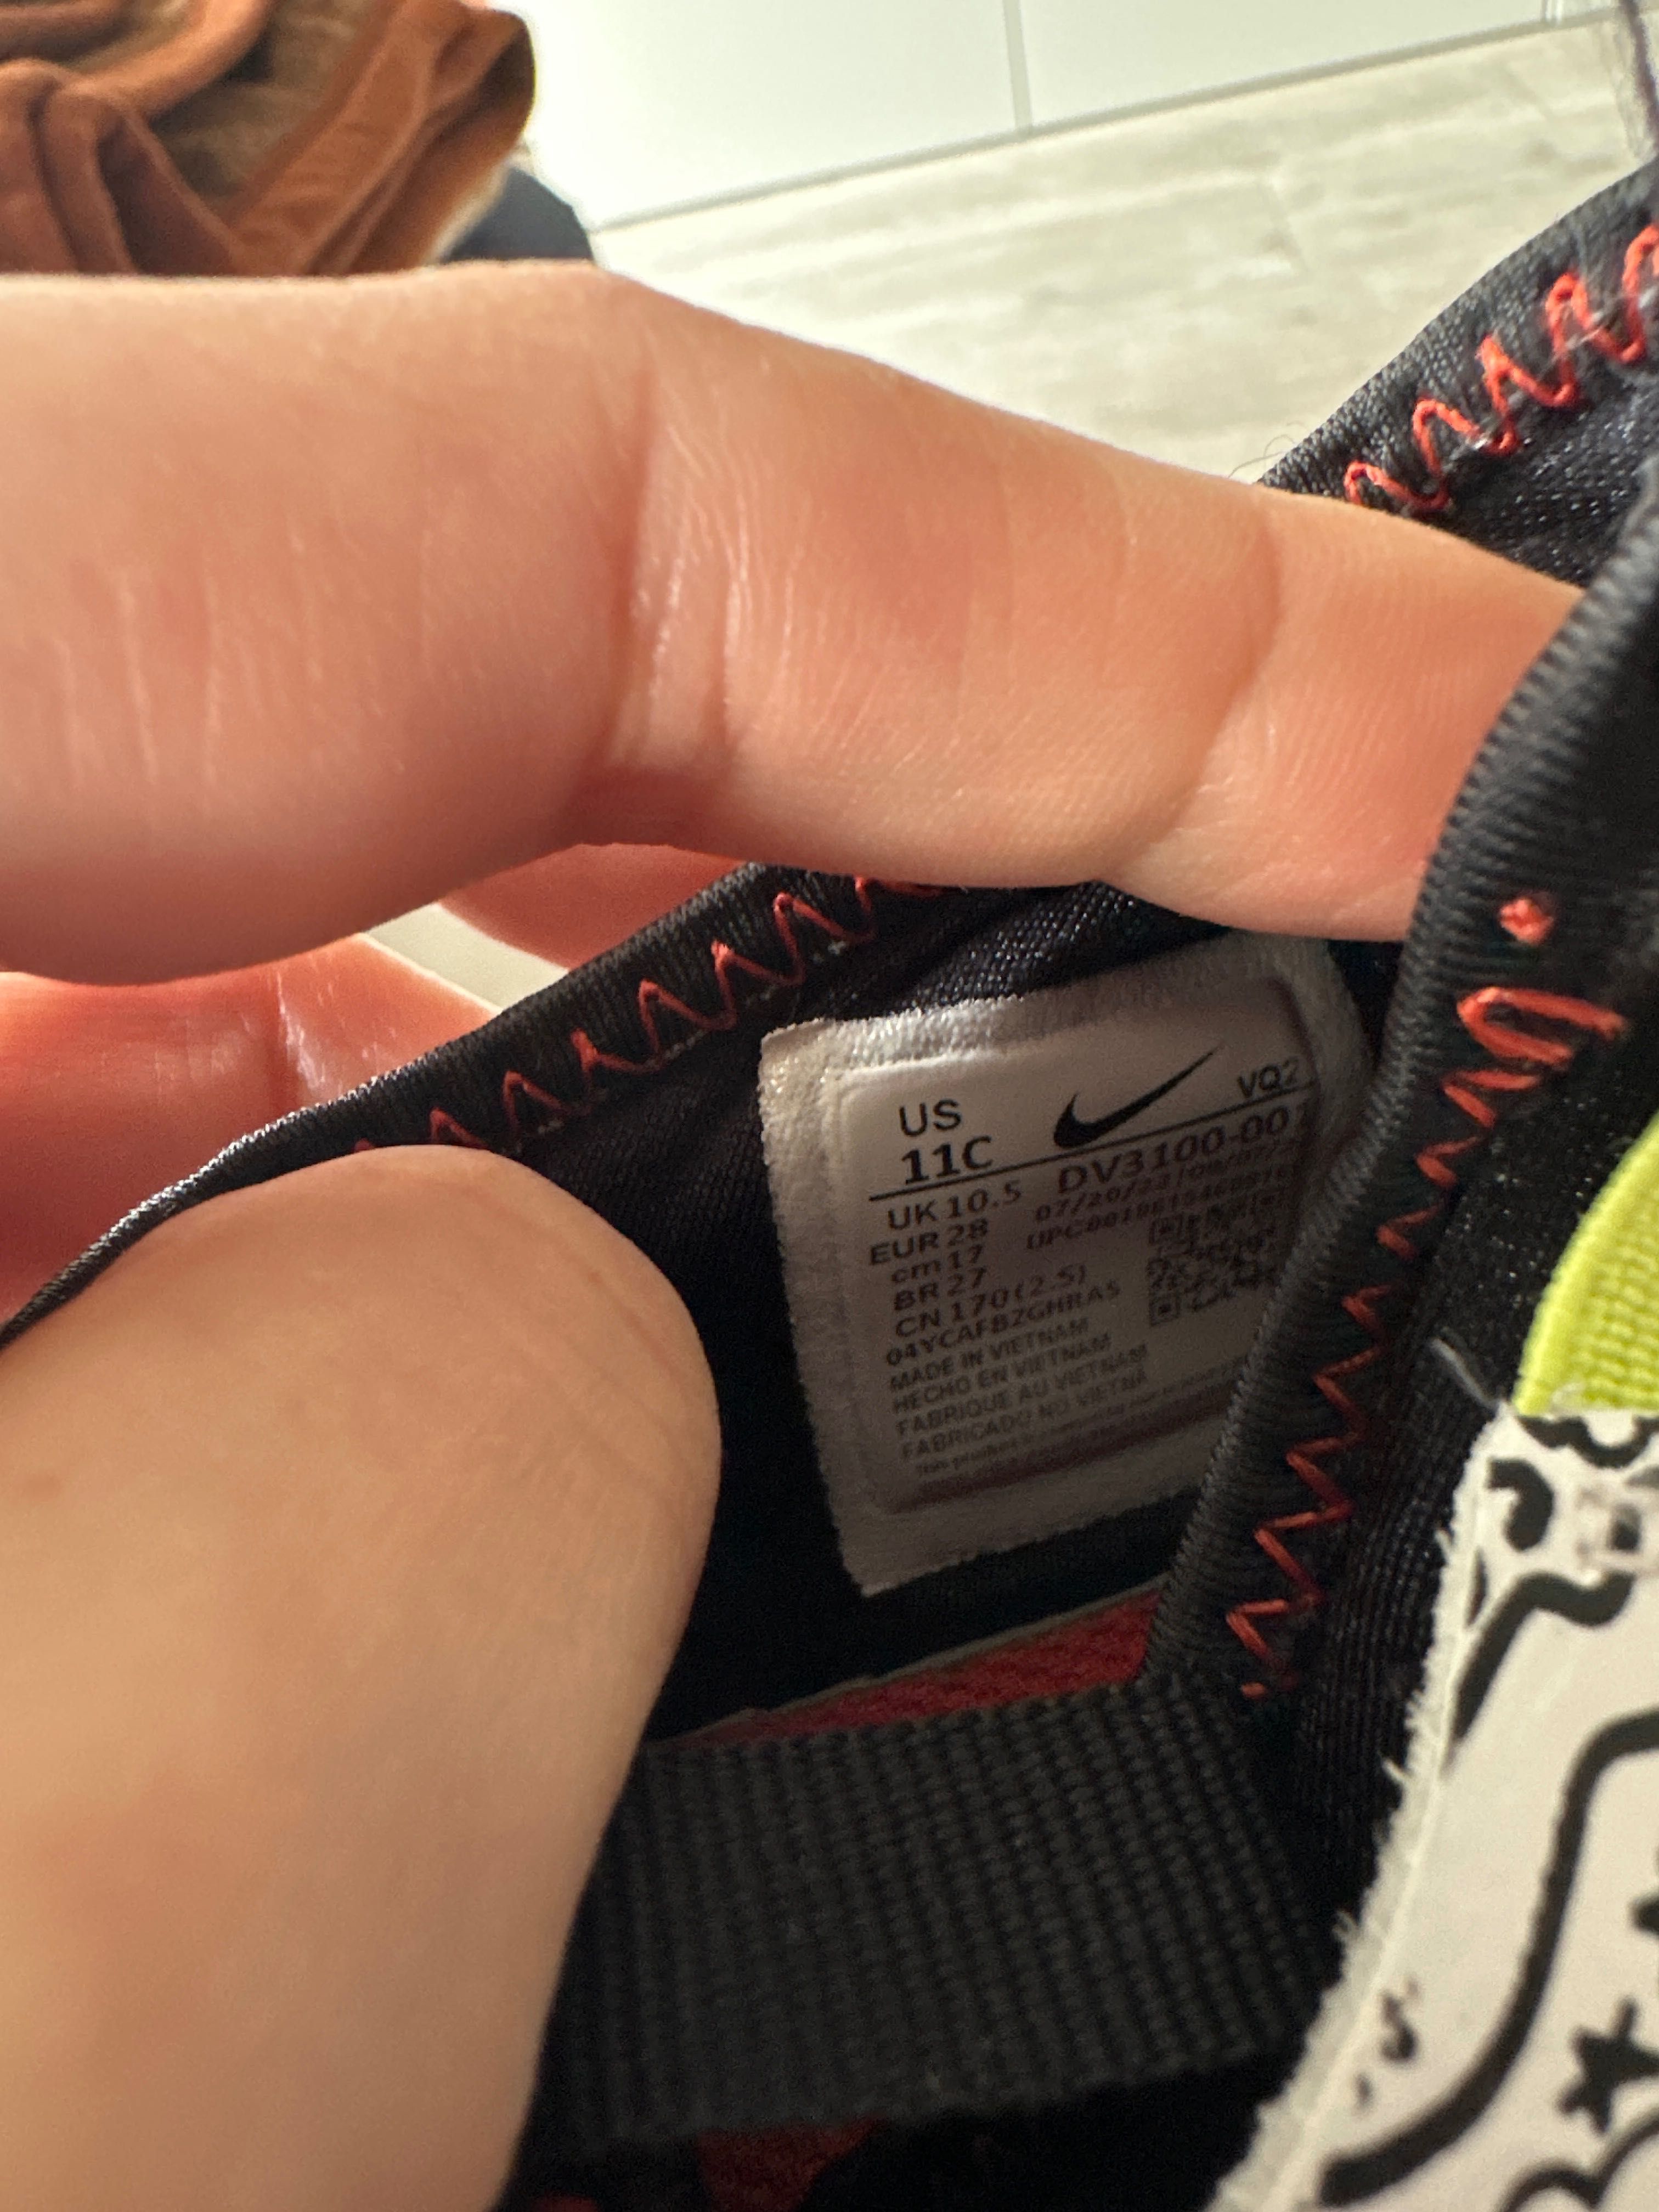 Buty Nike Flex Runner 2 adidasy dziecięce 28 17 cm wsuwane